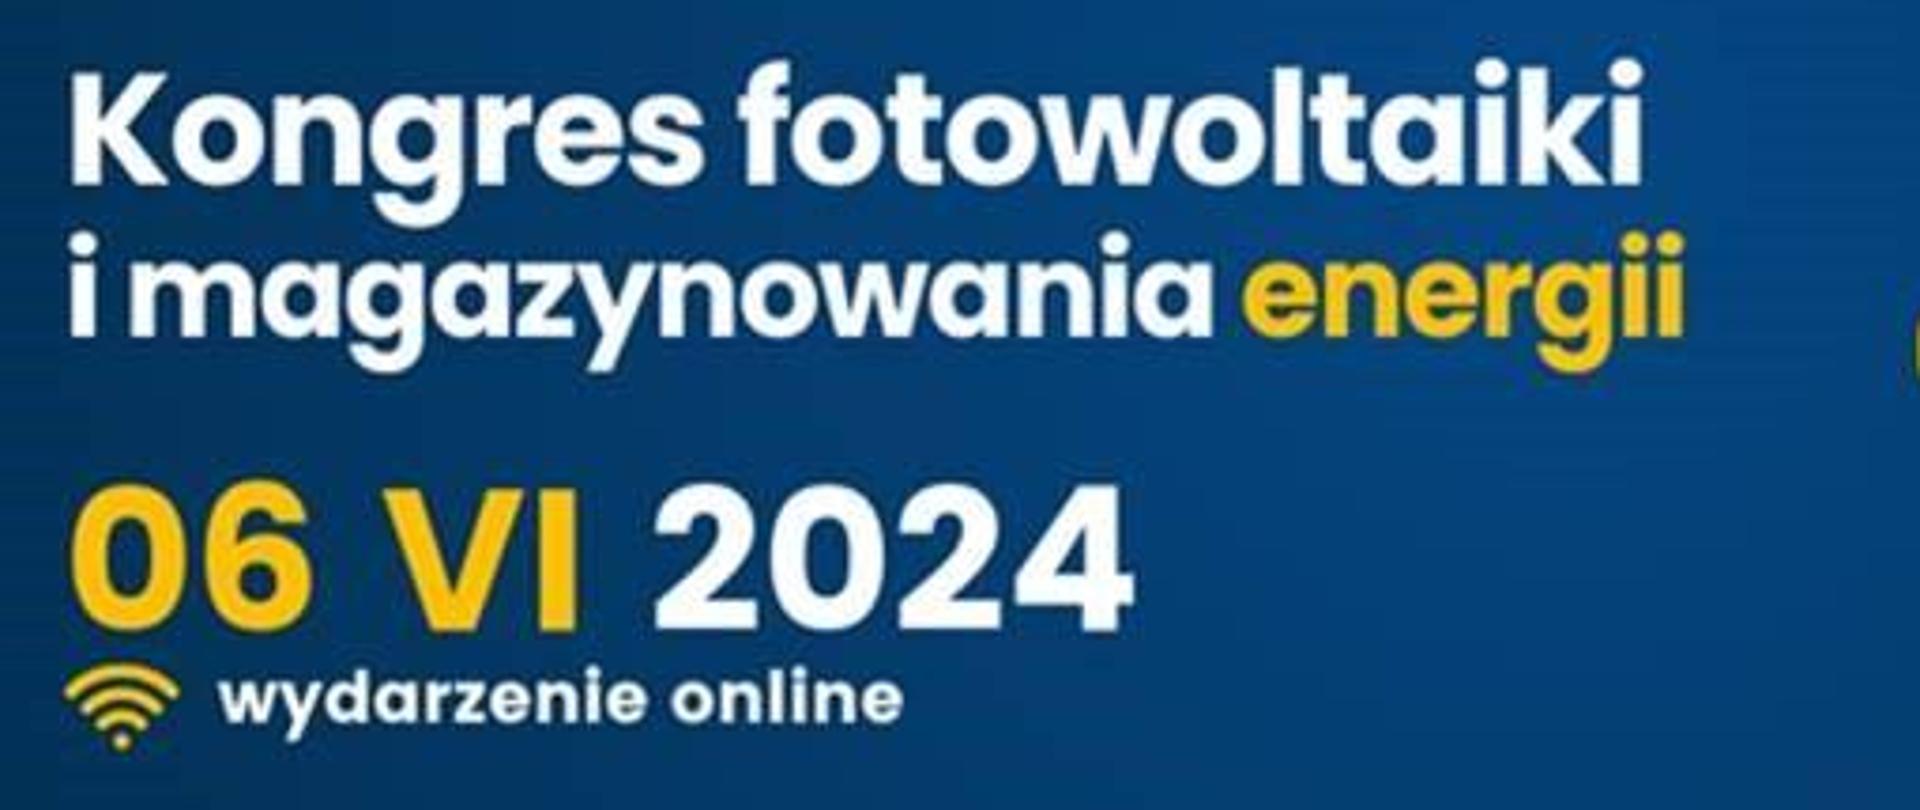 Plakat informacyjno-promocyjny oraz informacja o wydarzeniu PV CON 2024 Kongres Fotowoltaiczny, które odbędzie 6 czerwca 2024 w Warszawie